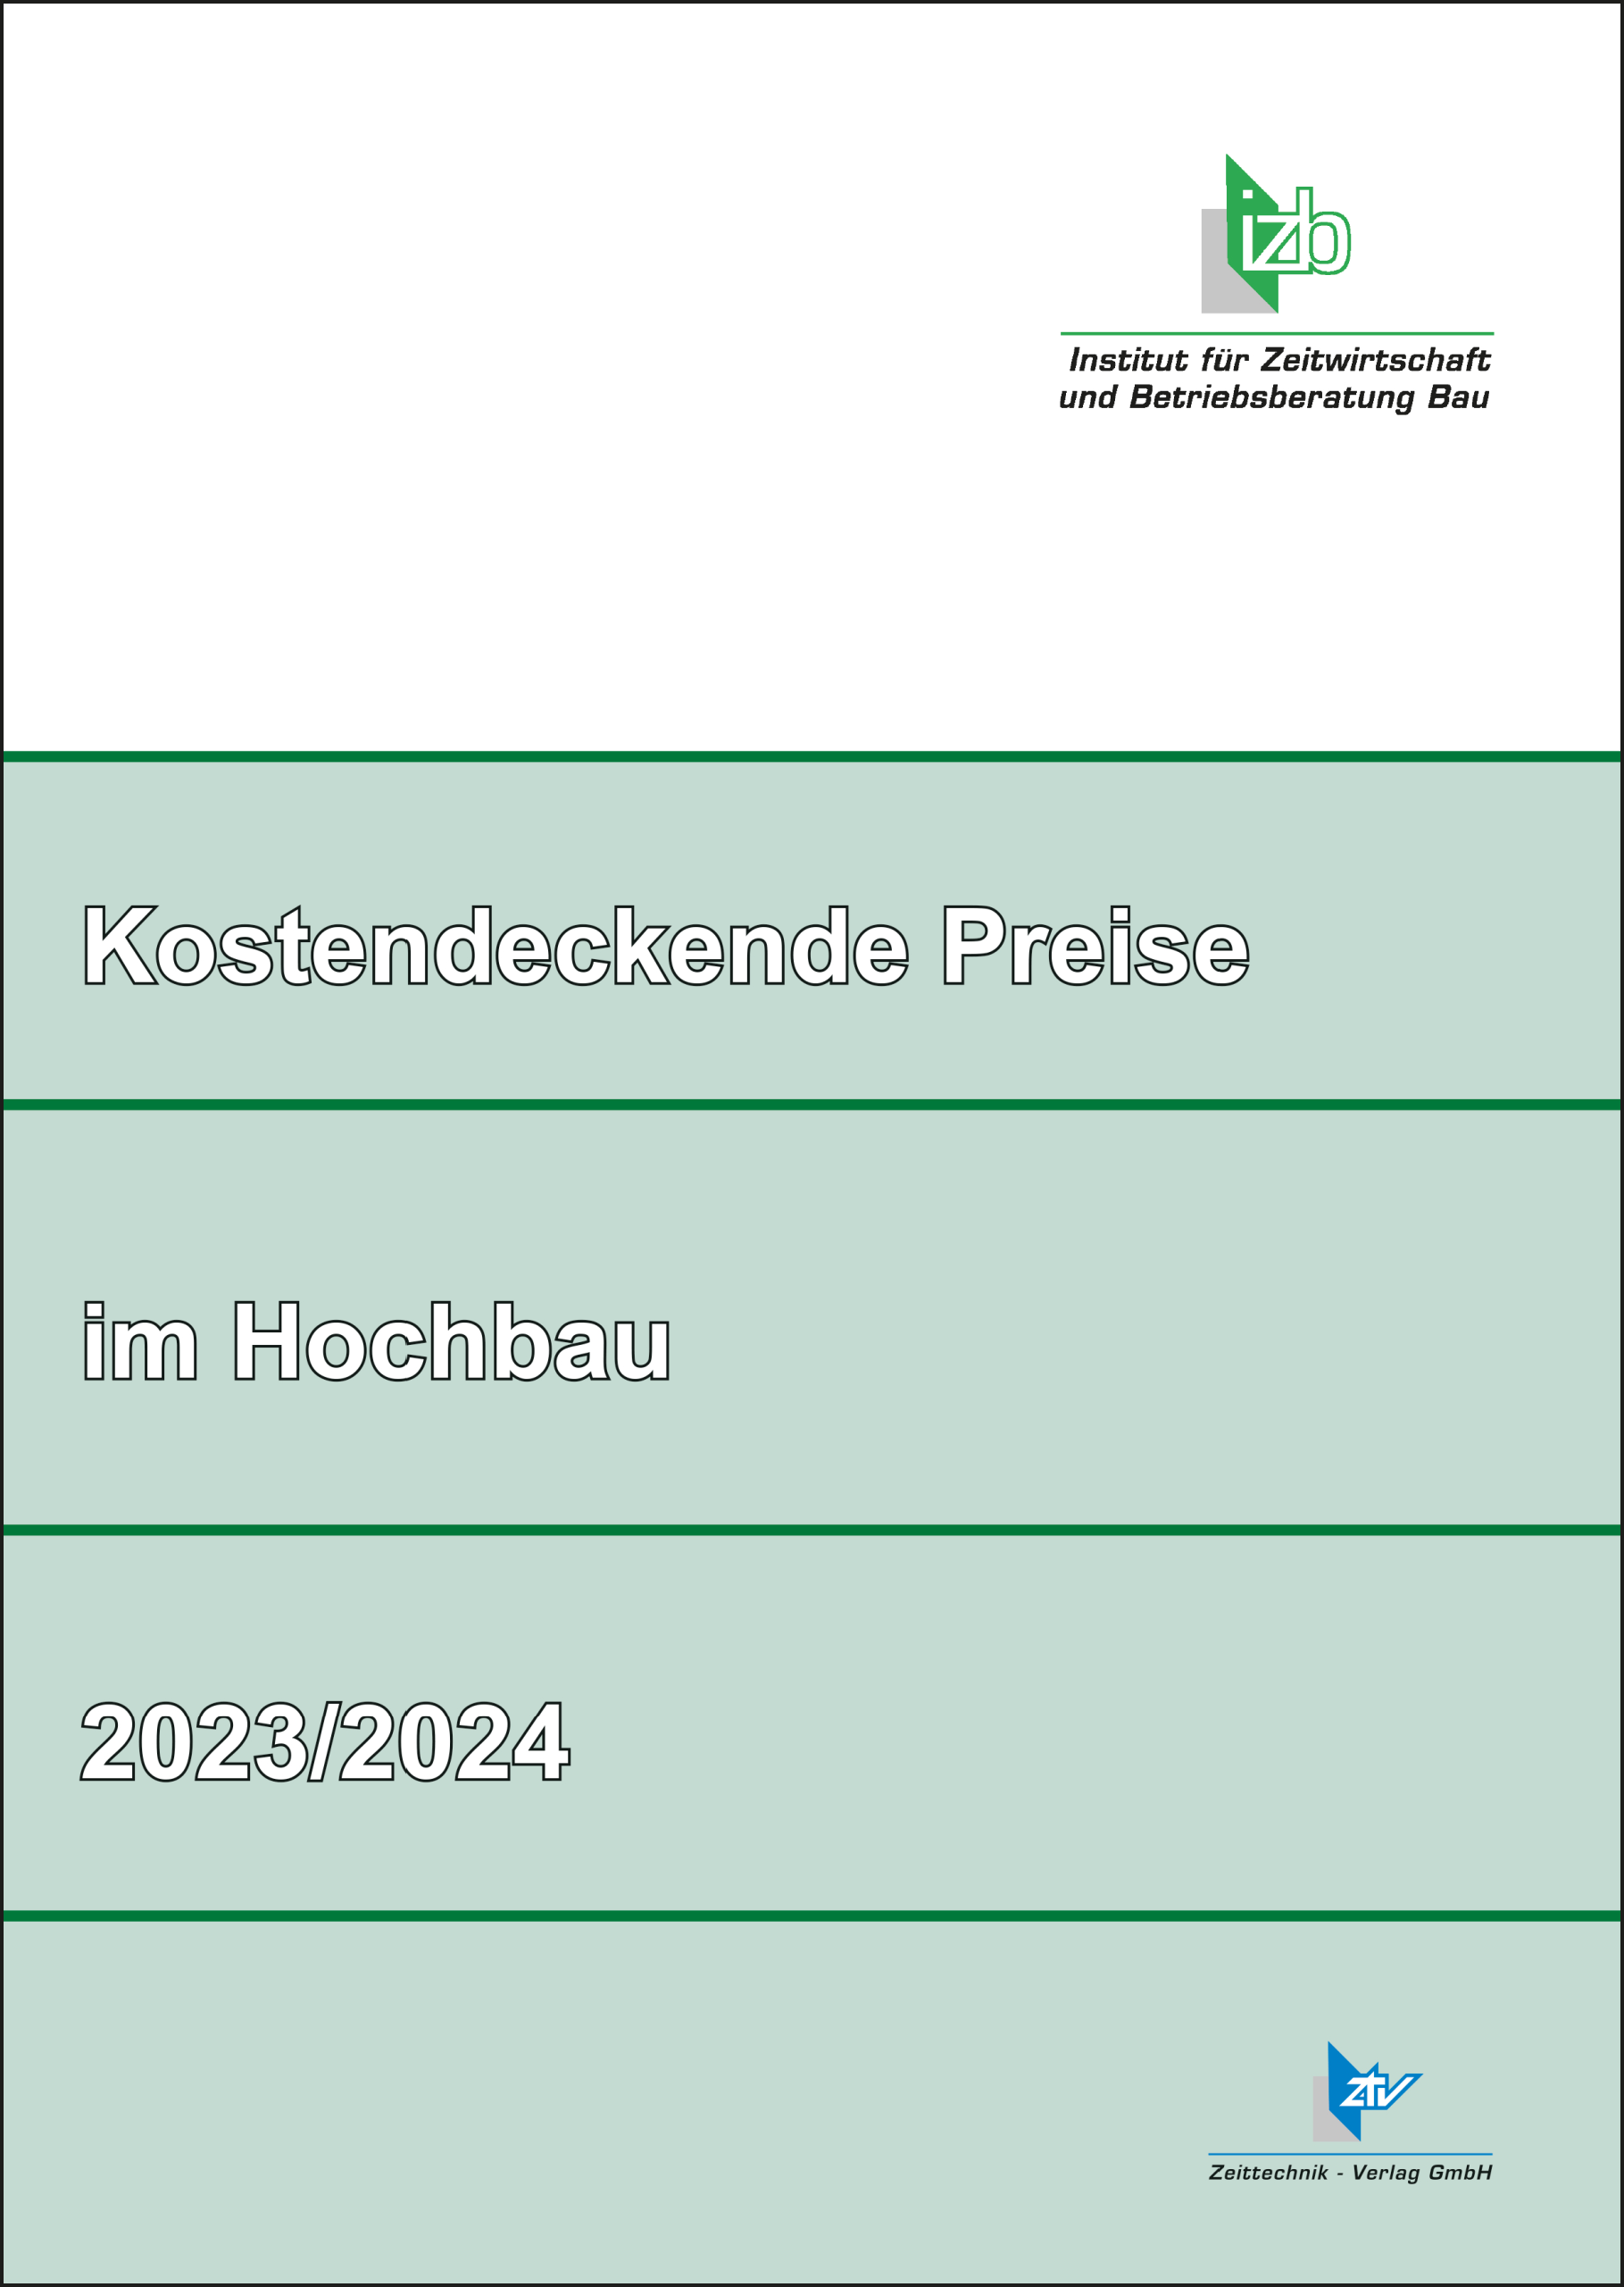 Kostendeckende Preise im Hochbau 2023/2024 (Download - PDF)